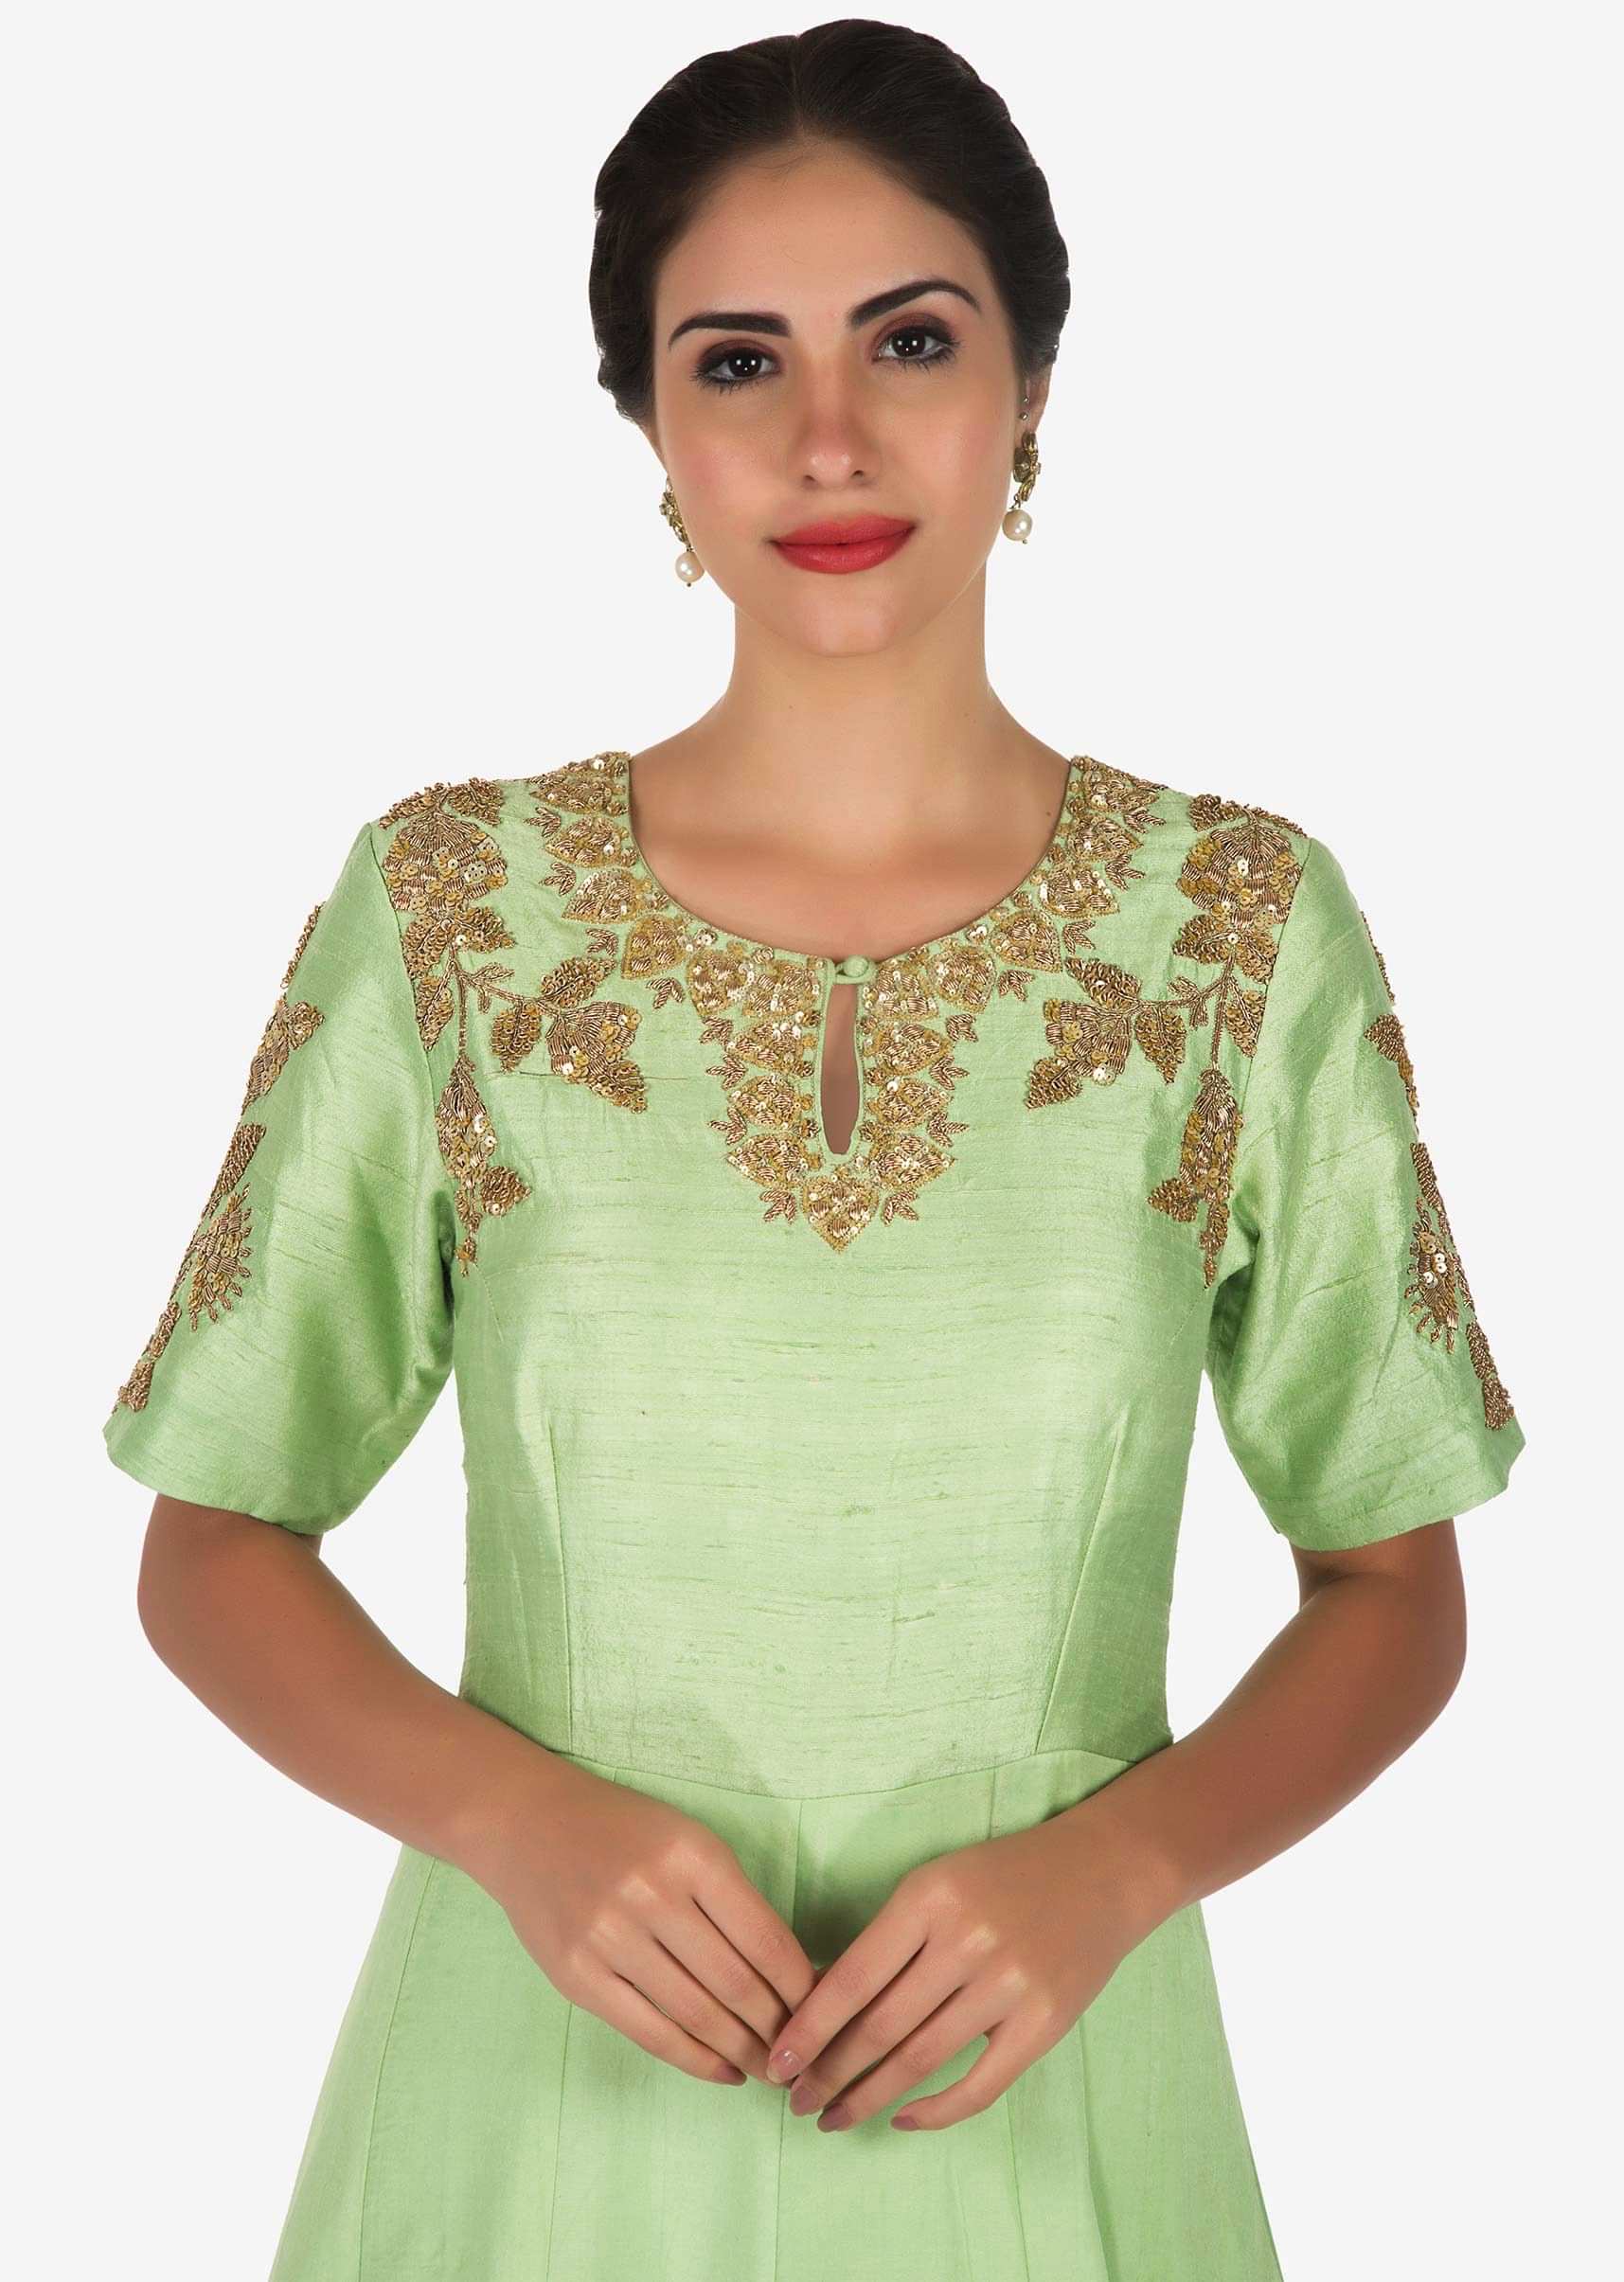 Pista Green Suit With Pink Dupatta Adorn In Zardosi And Sequin Work Online - Kalki Fashion